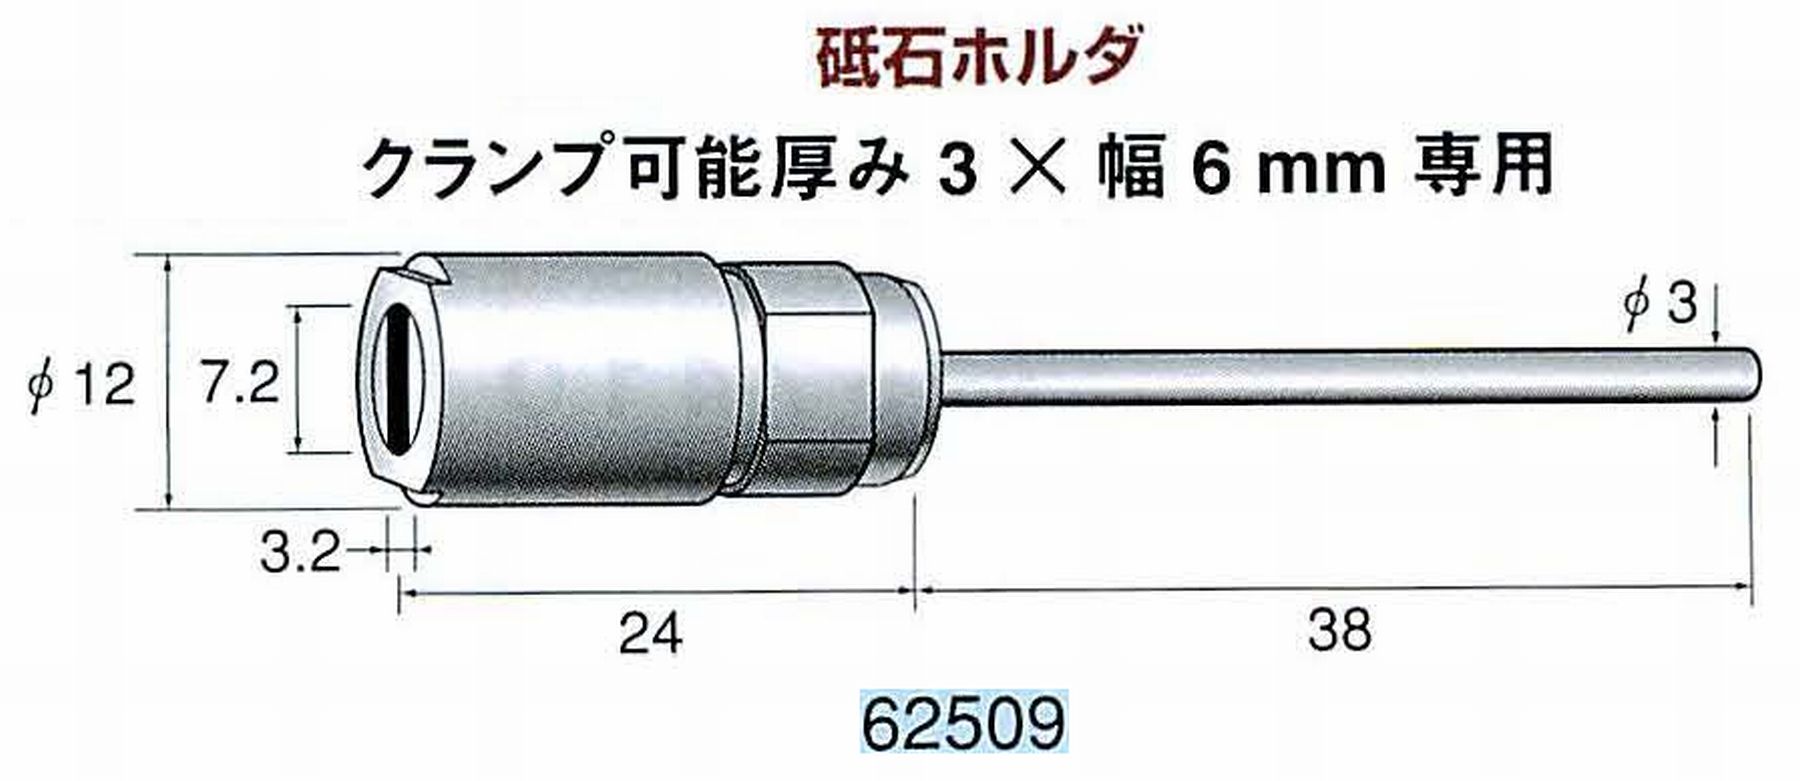 ナカニシ/NAKANISHI ハンディタイプ 電動・エアーヤスリ(往復動) ラスター専用工具 砥石ホルダ 62509